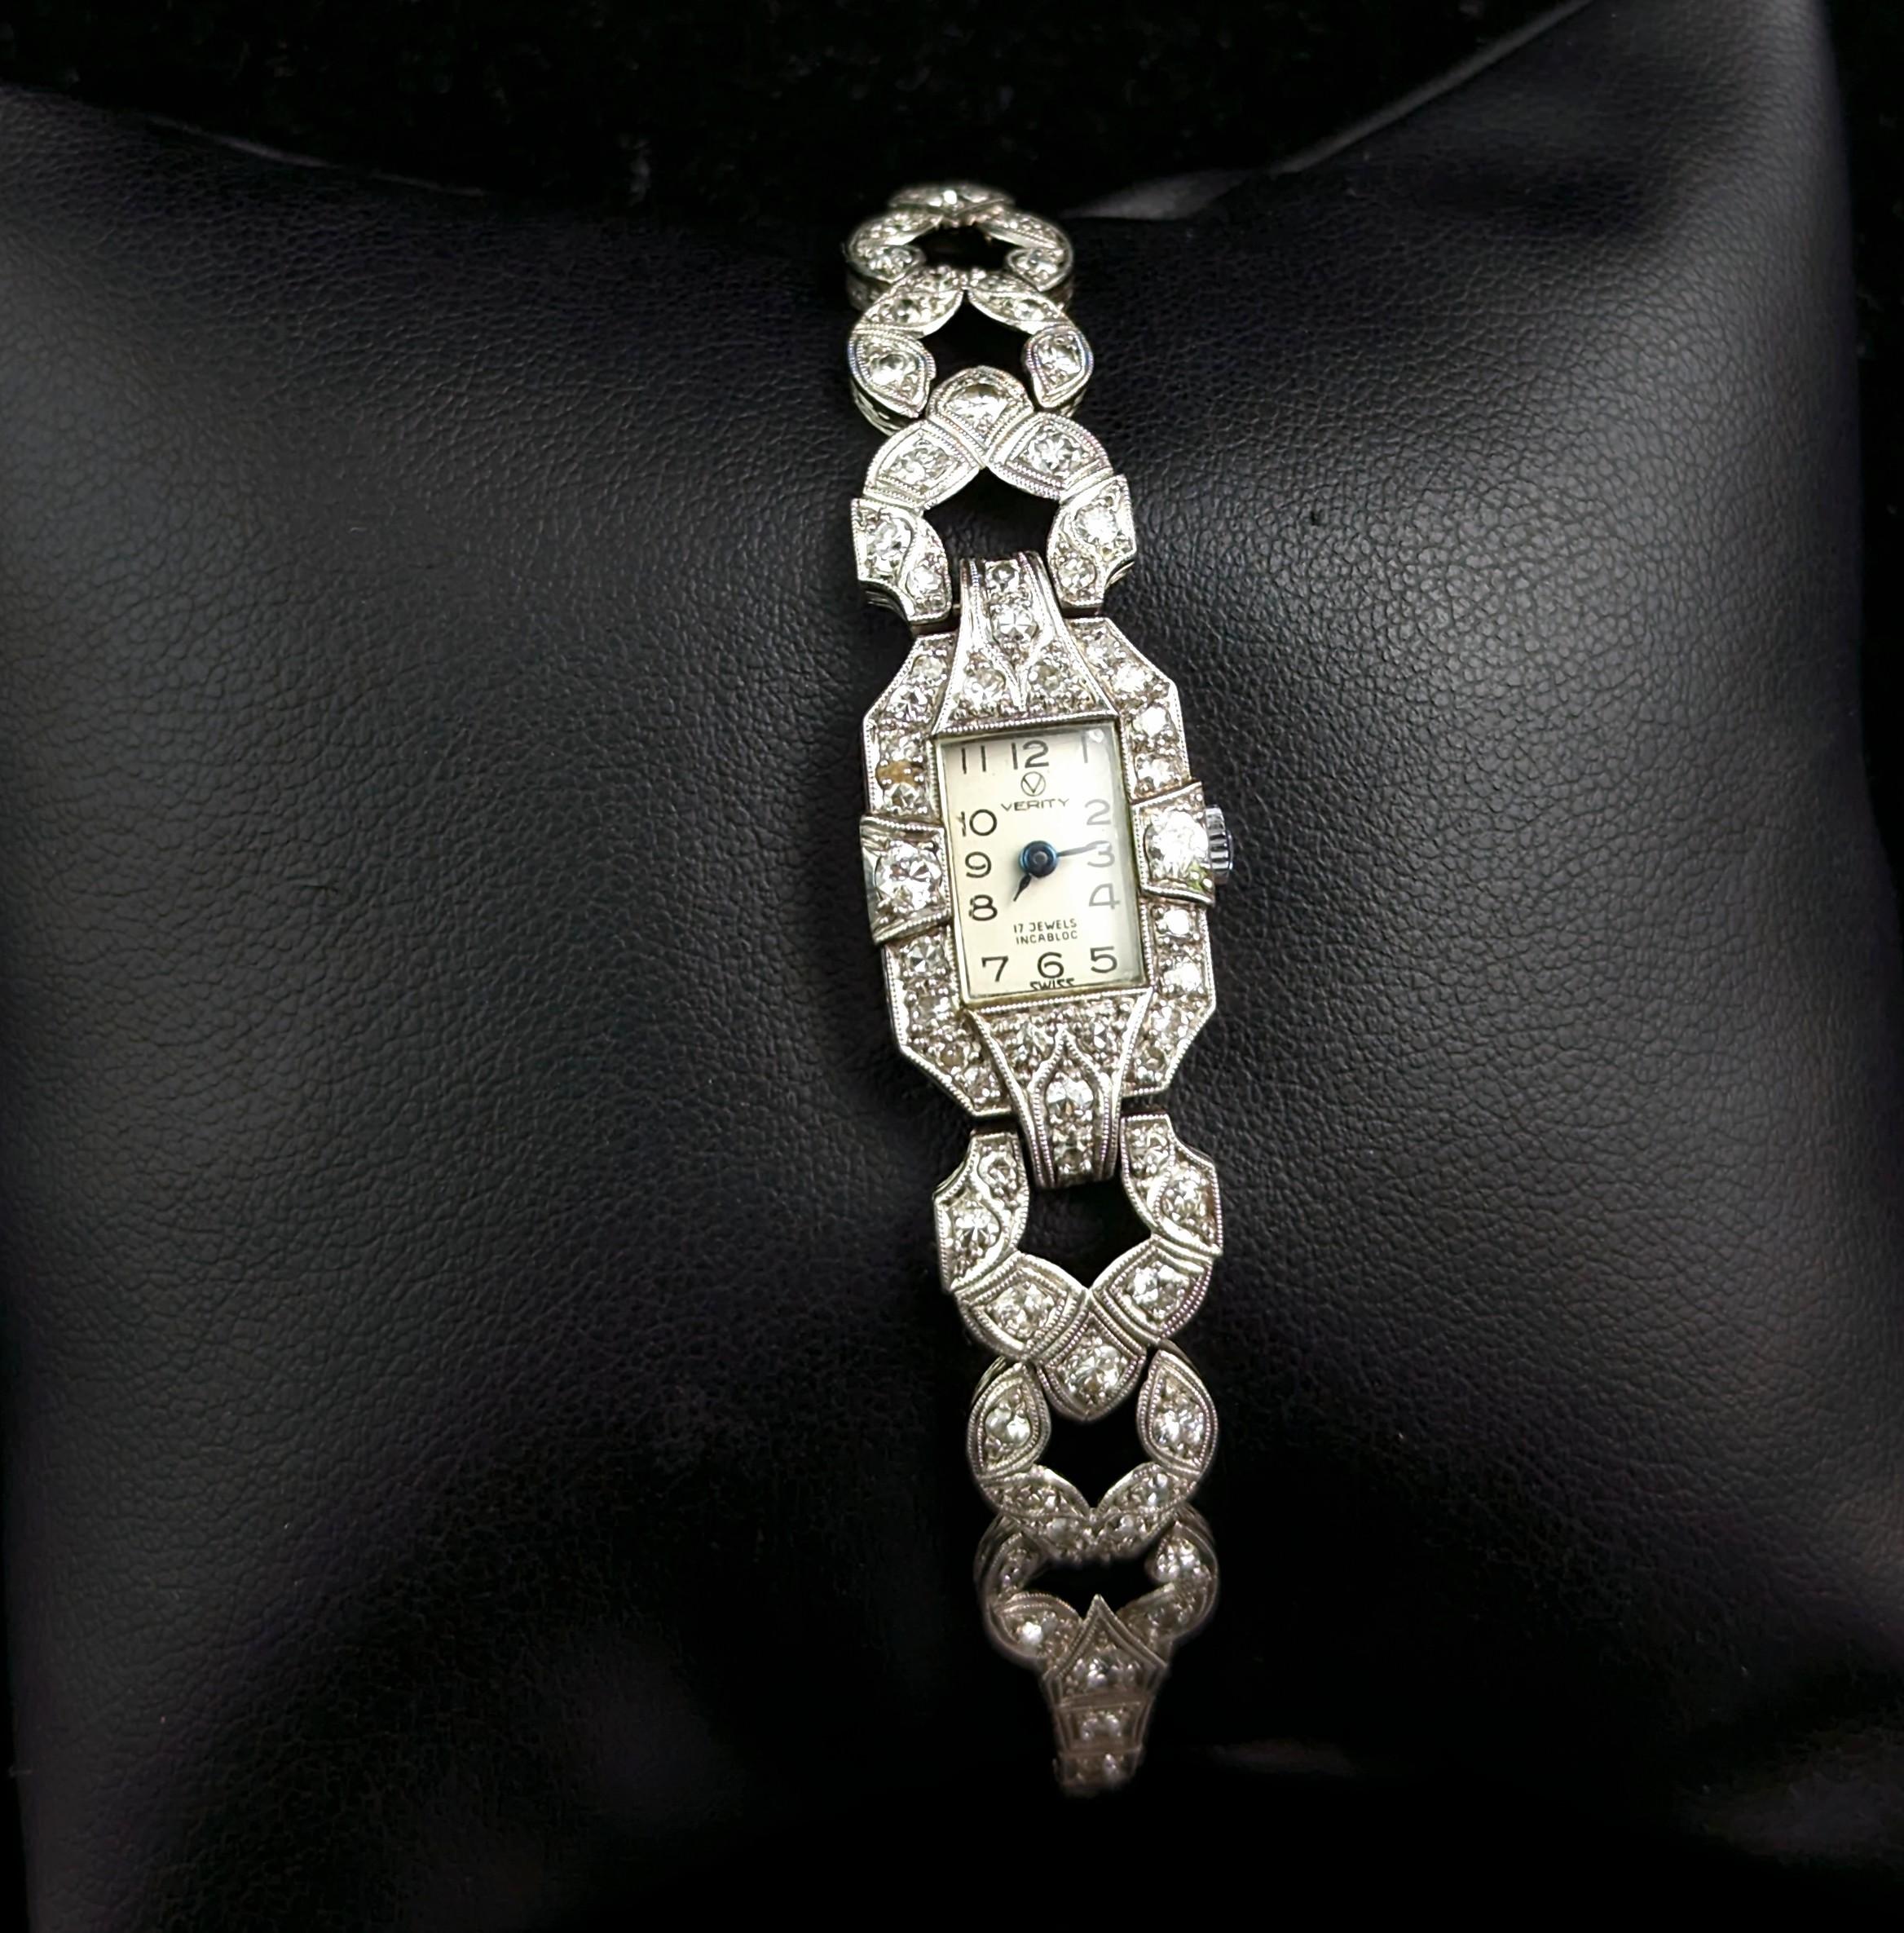 Cette exquise montre Art déco pour femmes est fabriquée à partir de diamants éblouissants et de platine précieux, ce qui en fait l'accessoire intemporel parfait pour toute occasion spéciale.

Dotée d'un impressionnant et éblouissant design clouté de